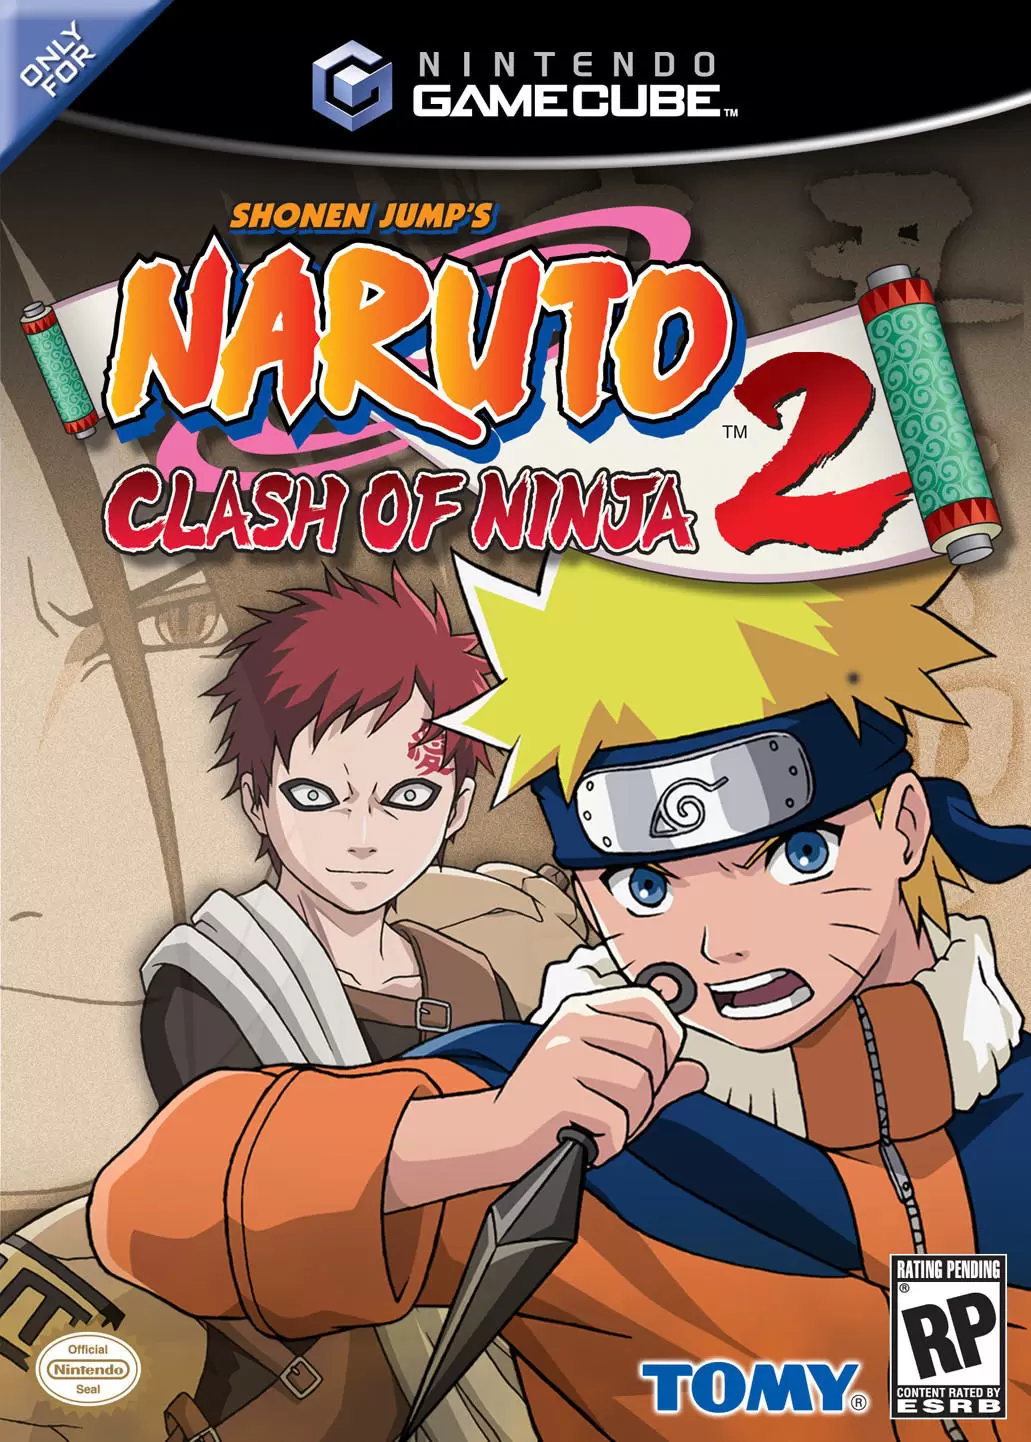 Nintendo Gamecube Games - Naruto: Clash of Ninja 2